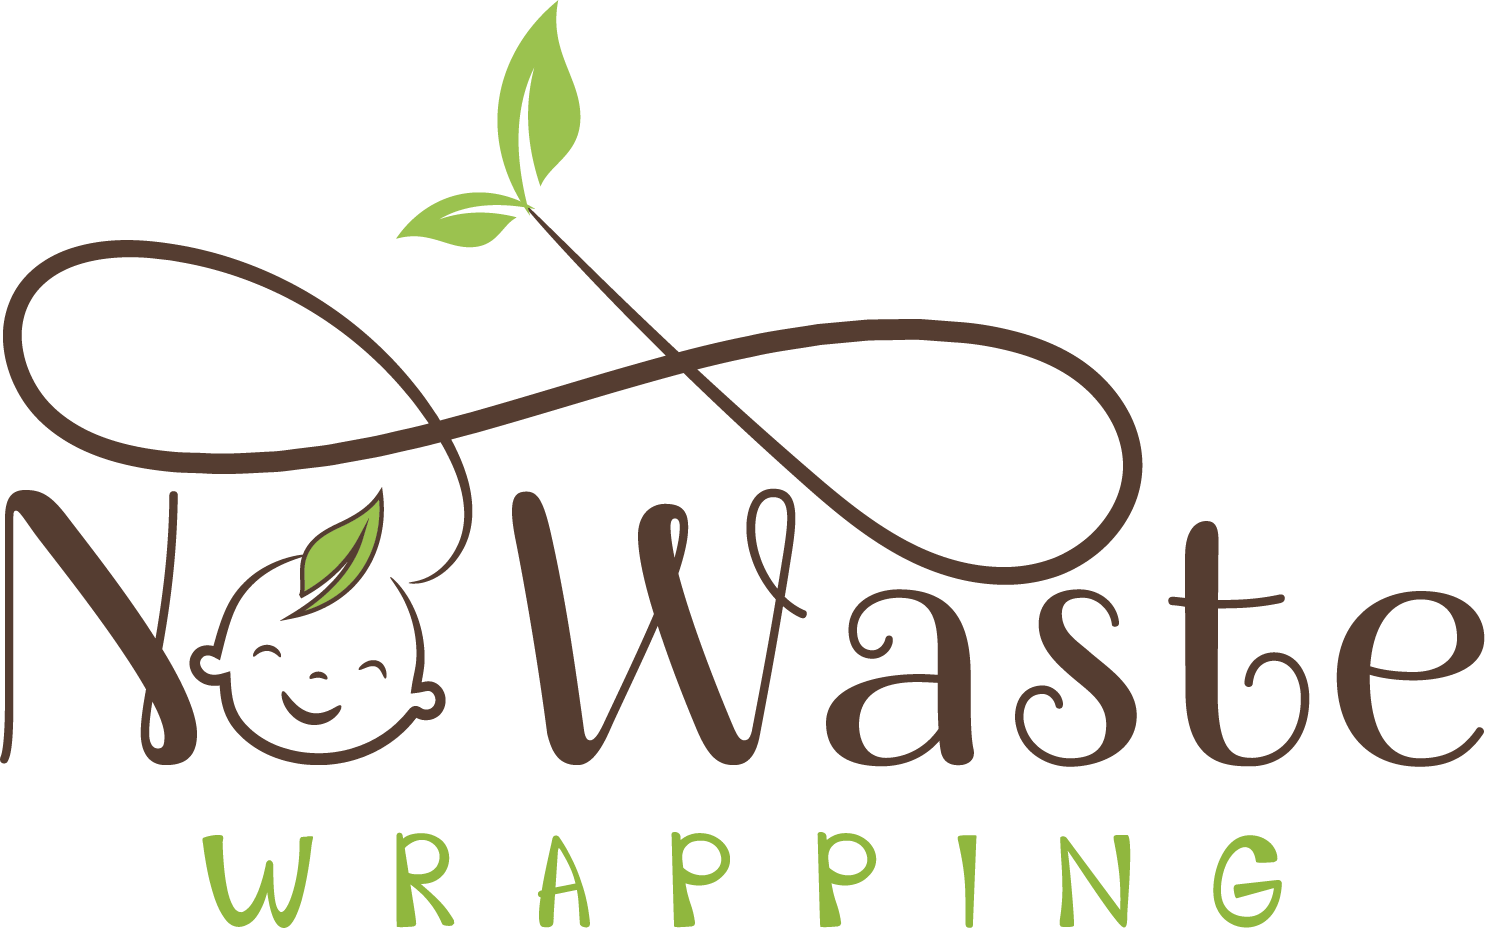 NoWasteWrapping Stoffwindeln und Zubehör Logo